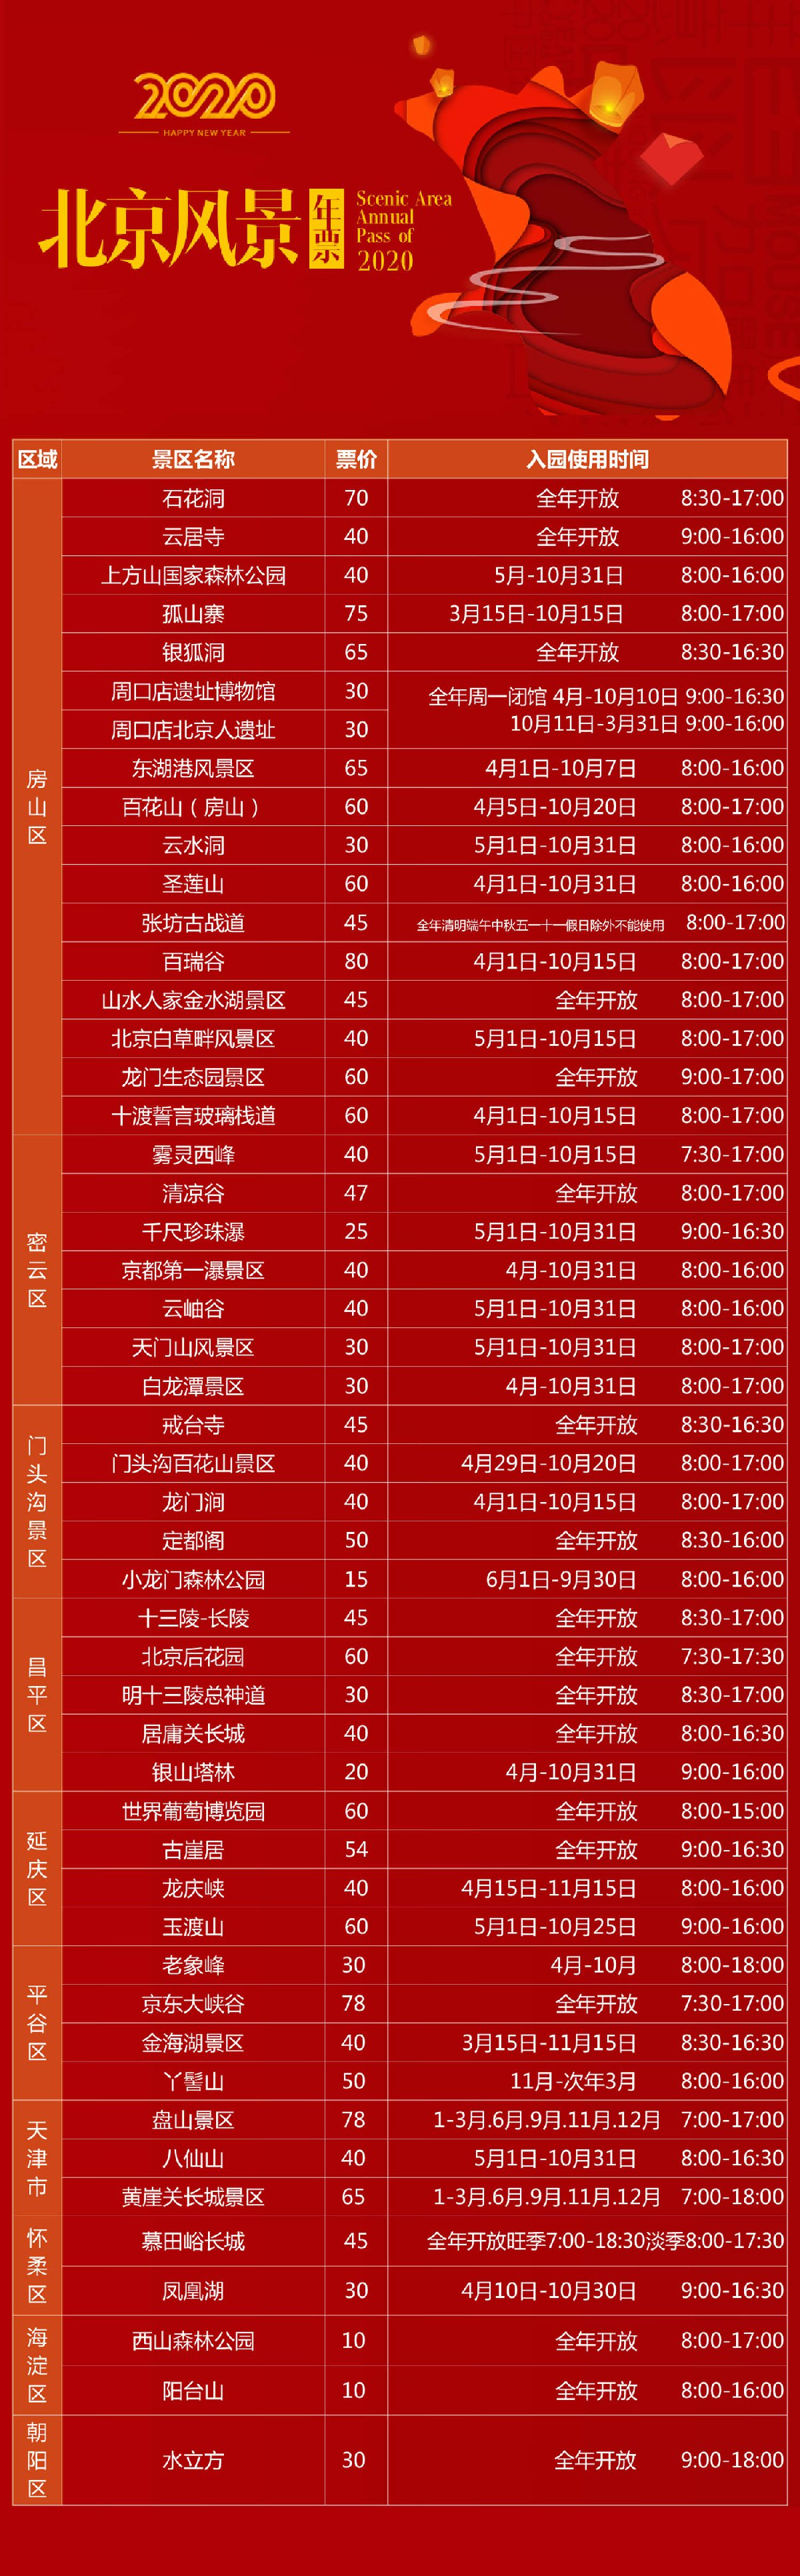 北京市旅游景点年票图片